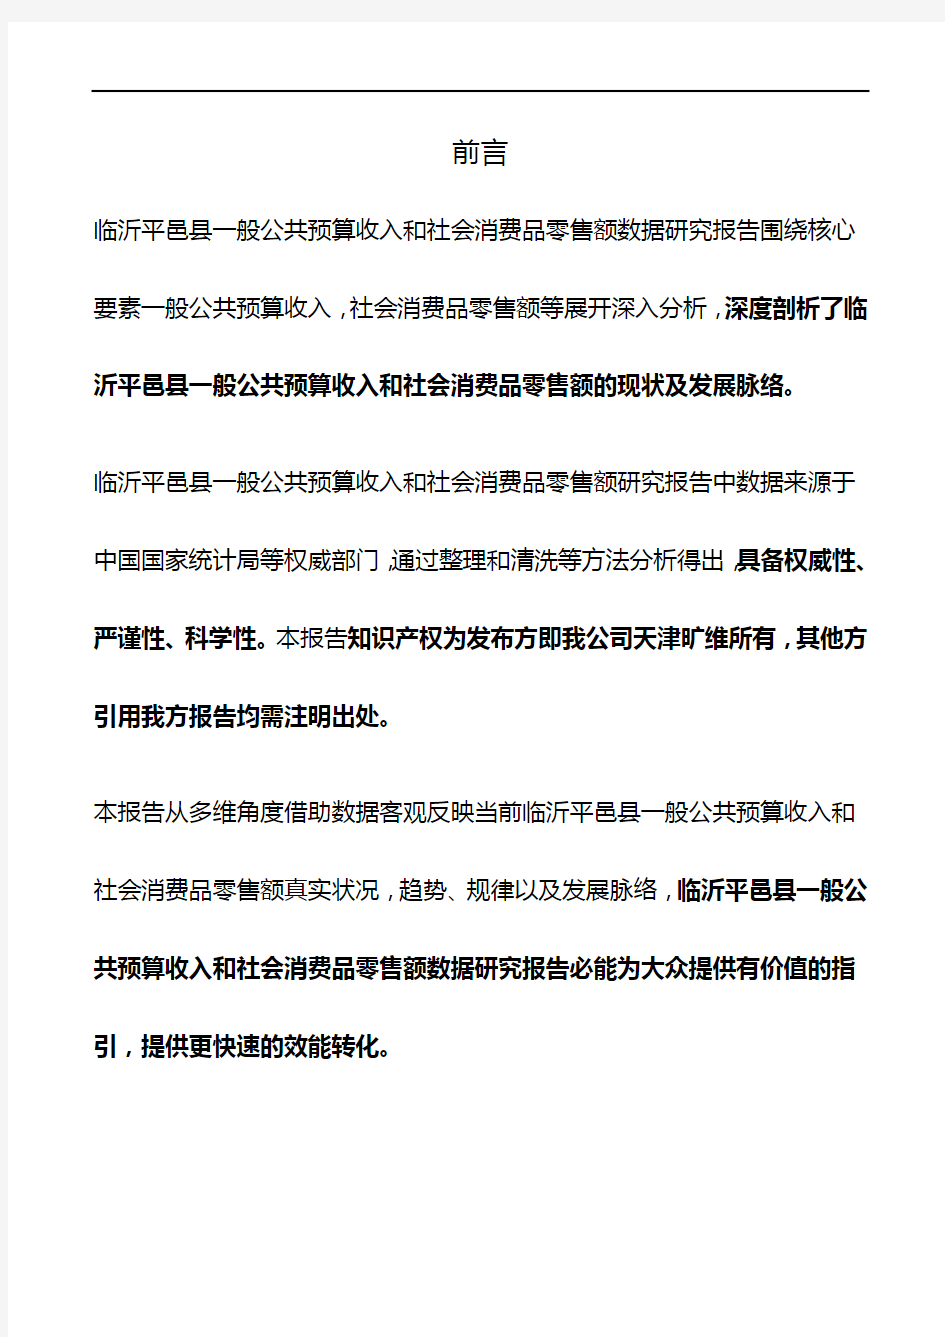 山东省临沂平邑县一般公共预算收入和社会消费品零售额3年数据研究报告2019版